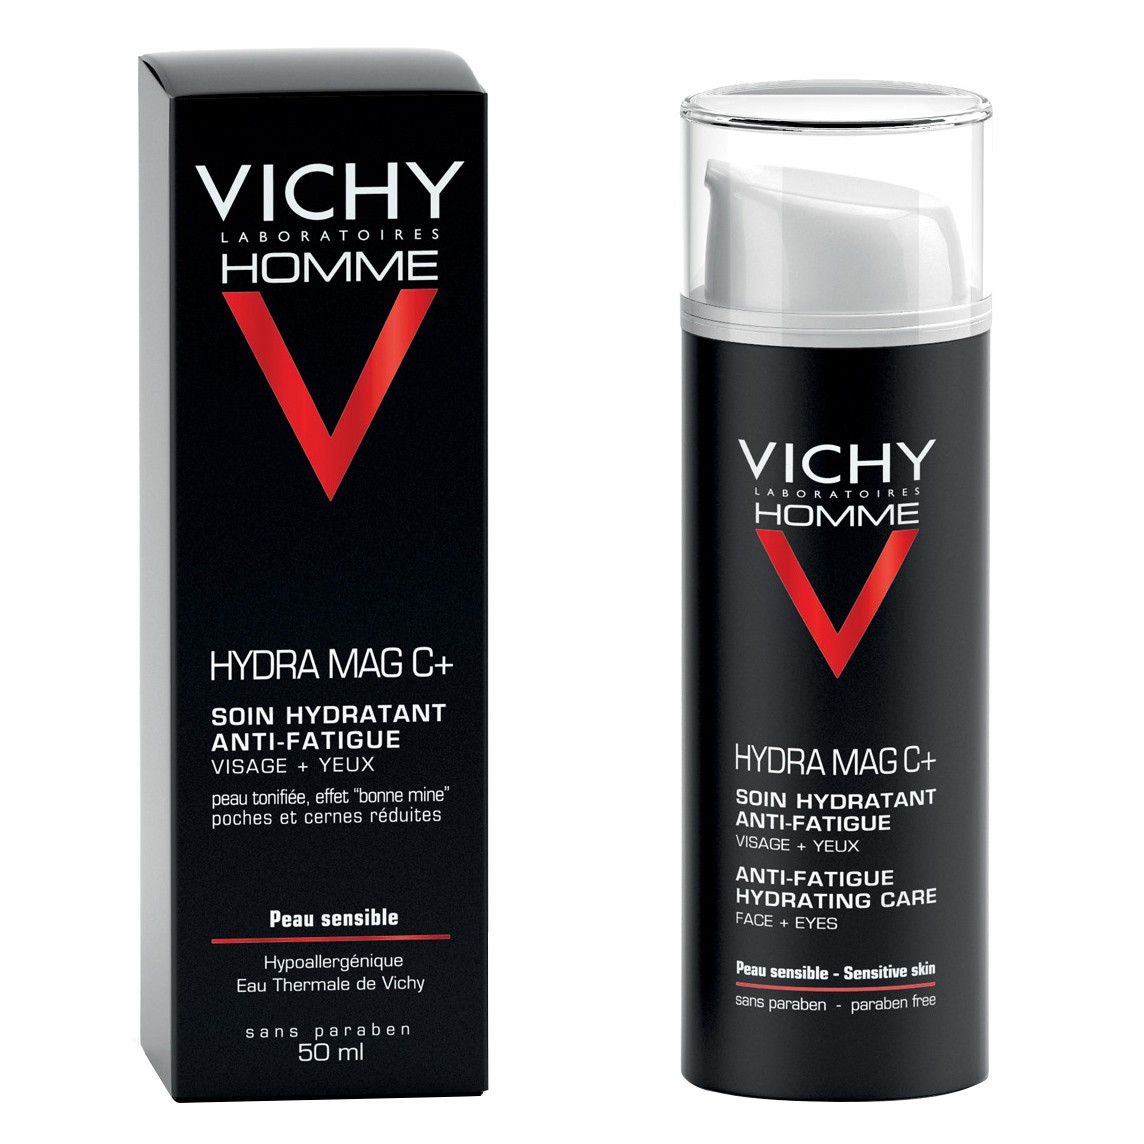 Vichy Homme hydra mag C tratamiento hidratante 50ml